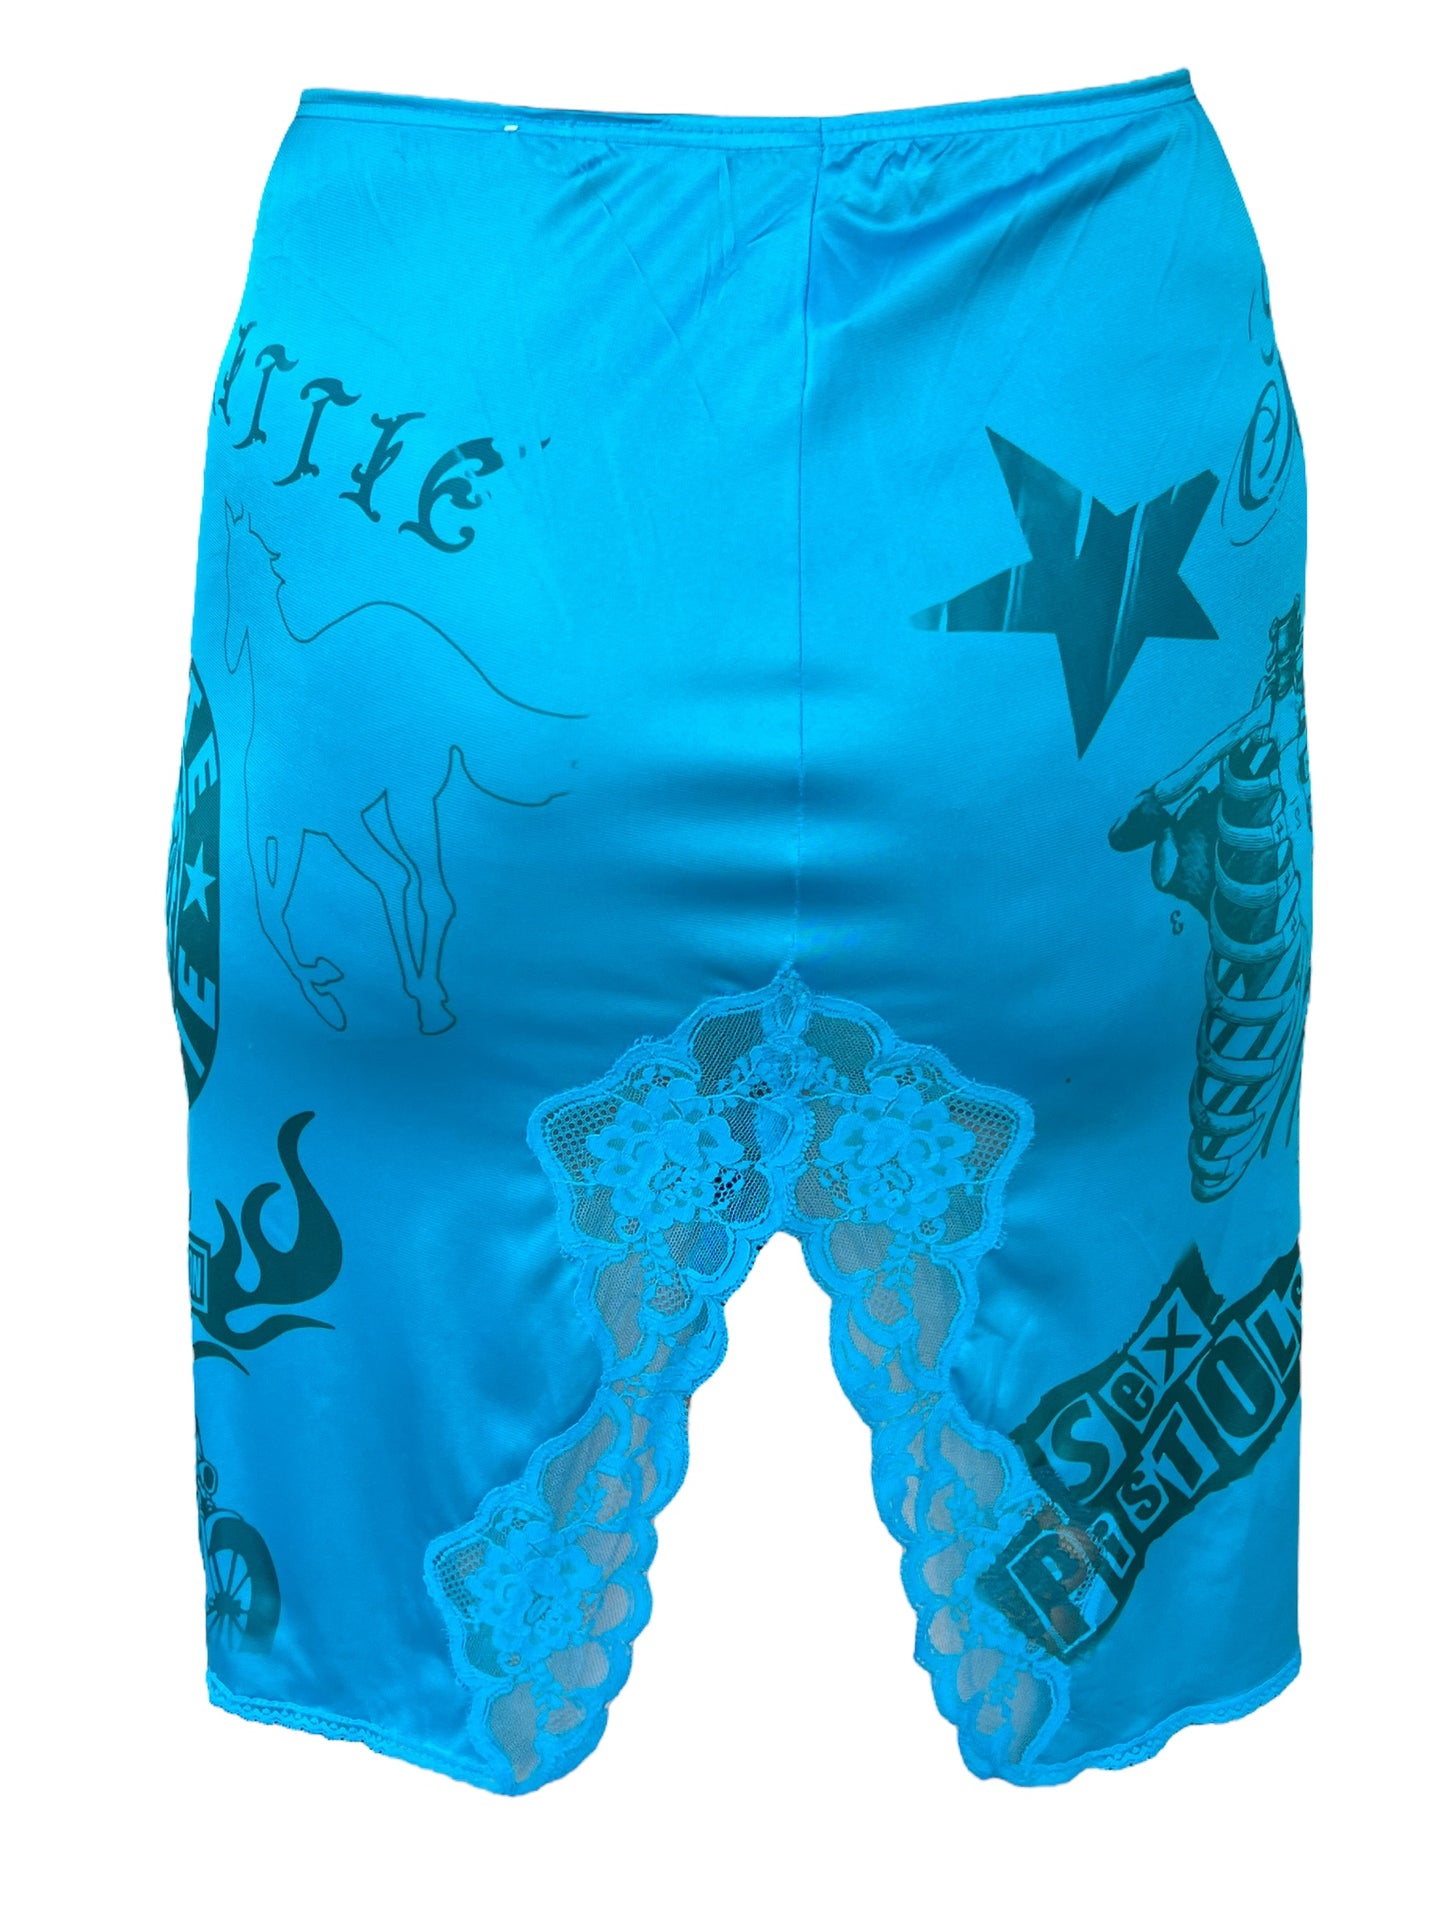 Tattoo Blue Skirt - XS